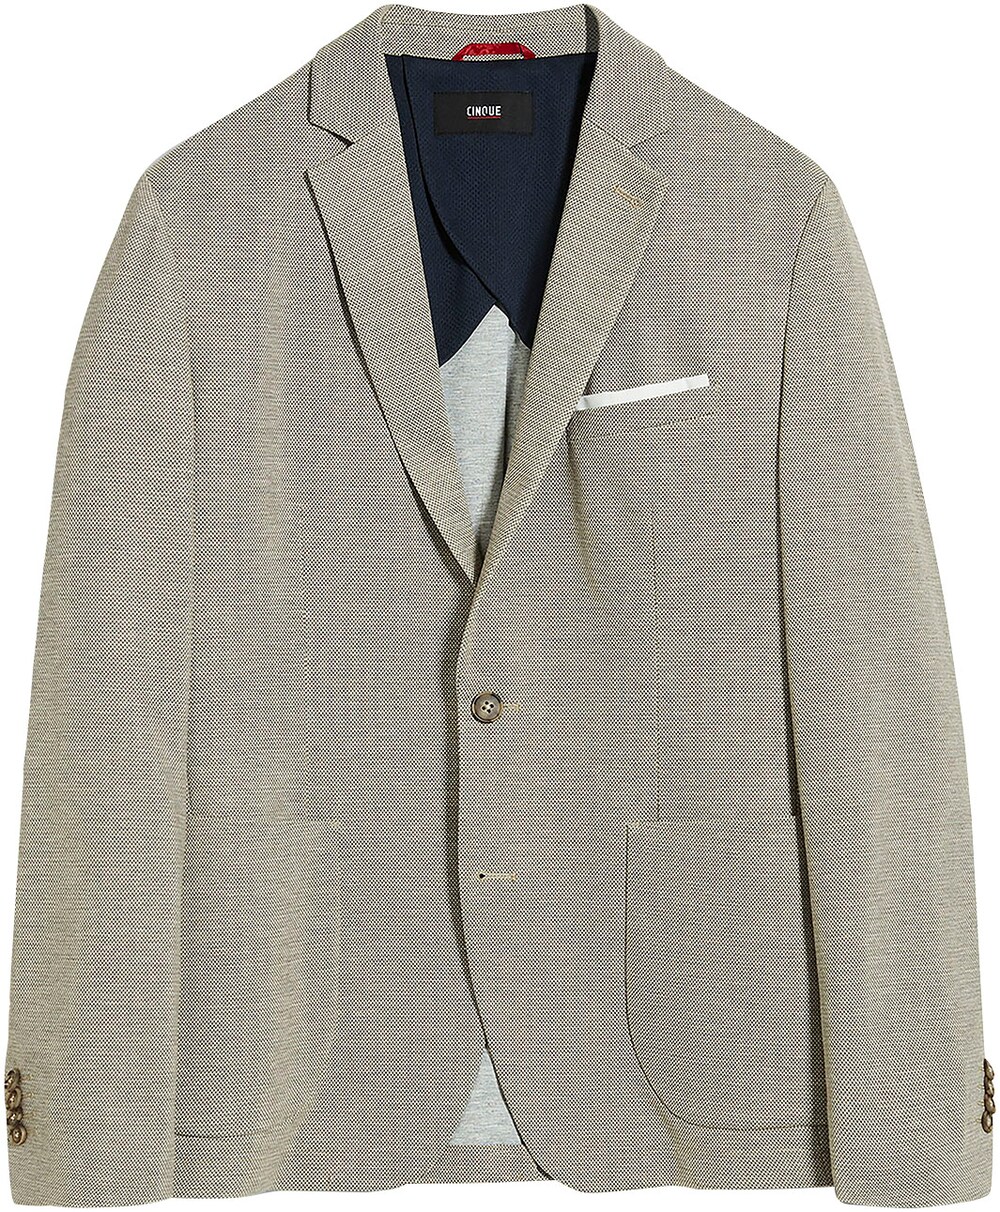 Пиджак стандартного кроя Cinque, коричневый